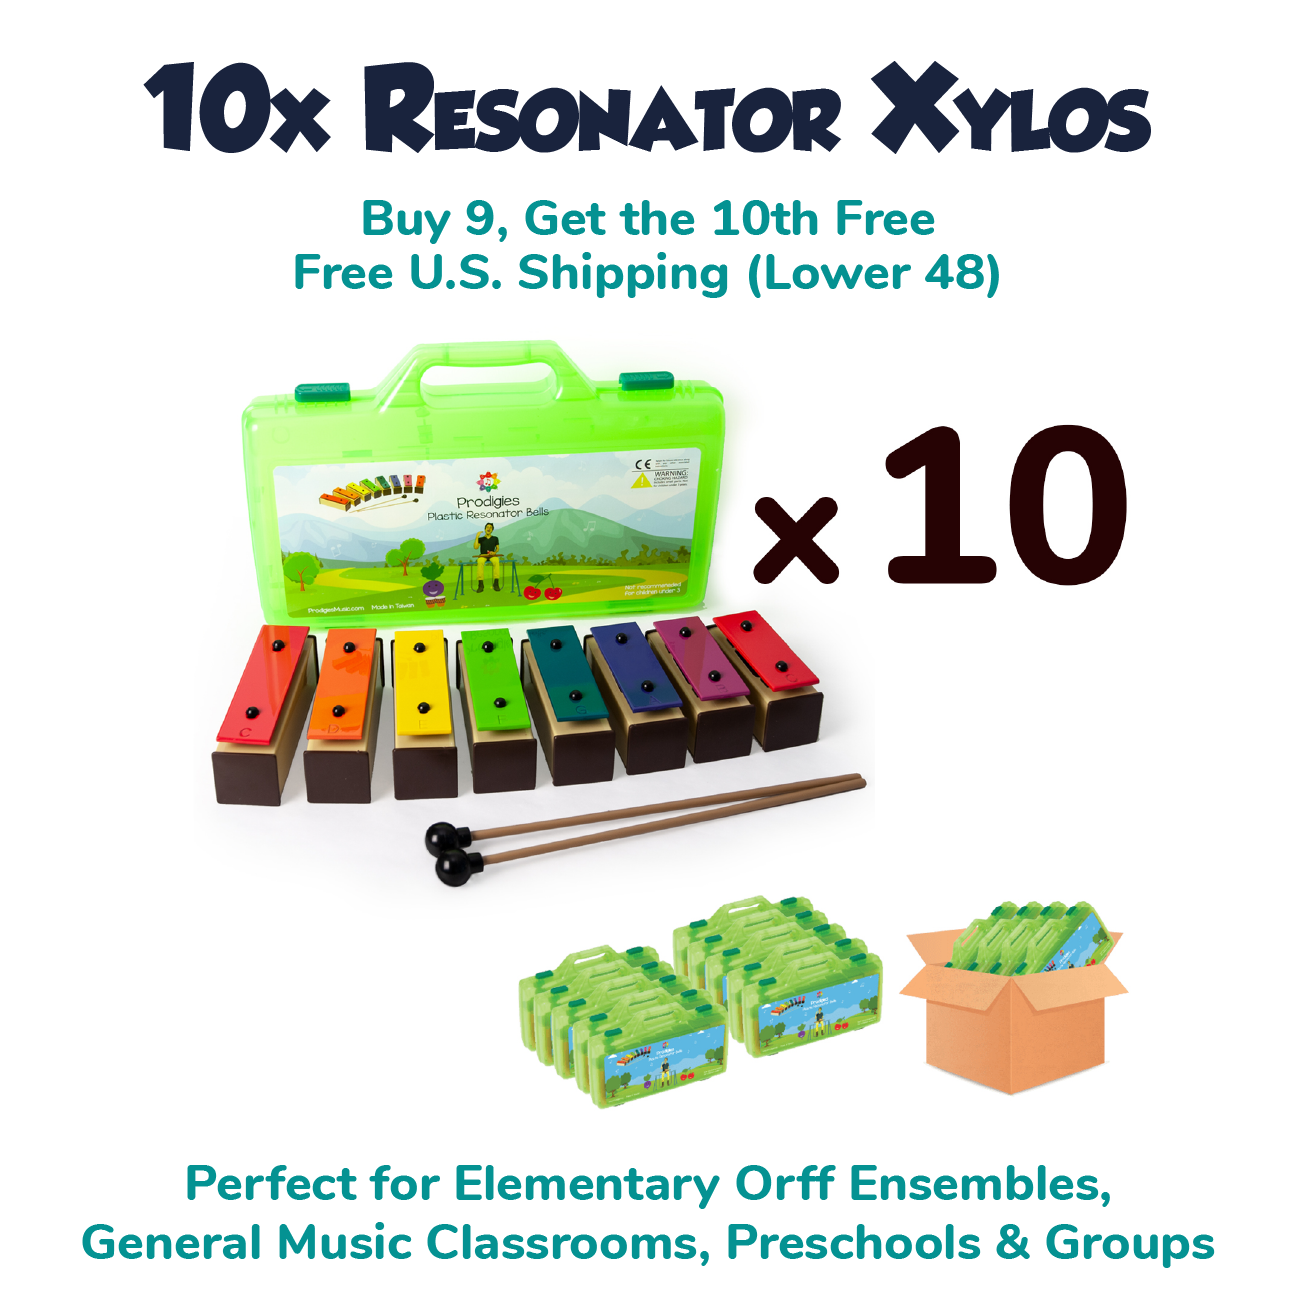 1 Year Resonator Xylophone Kit